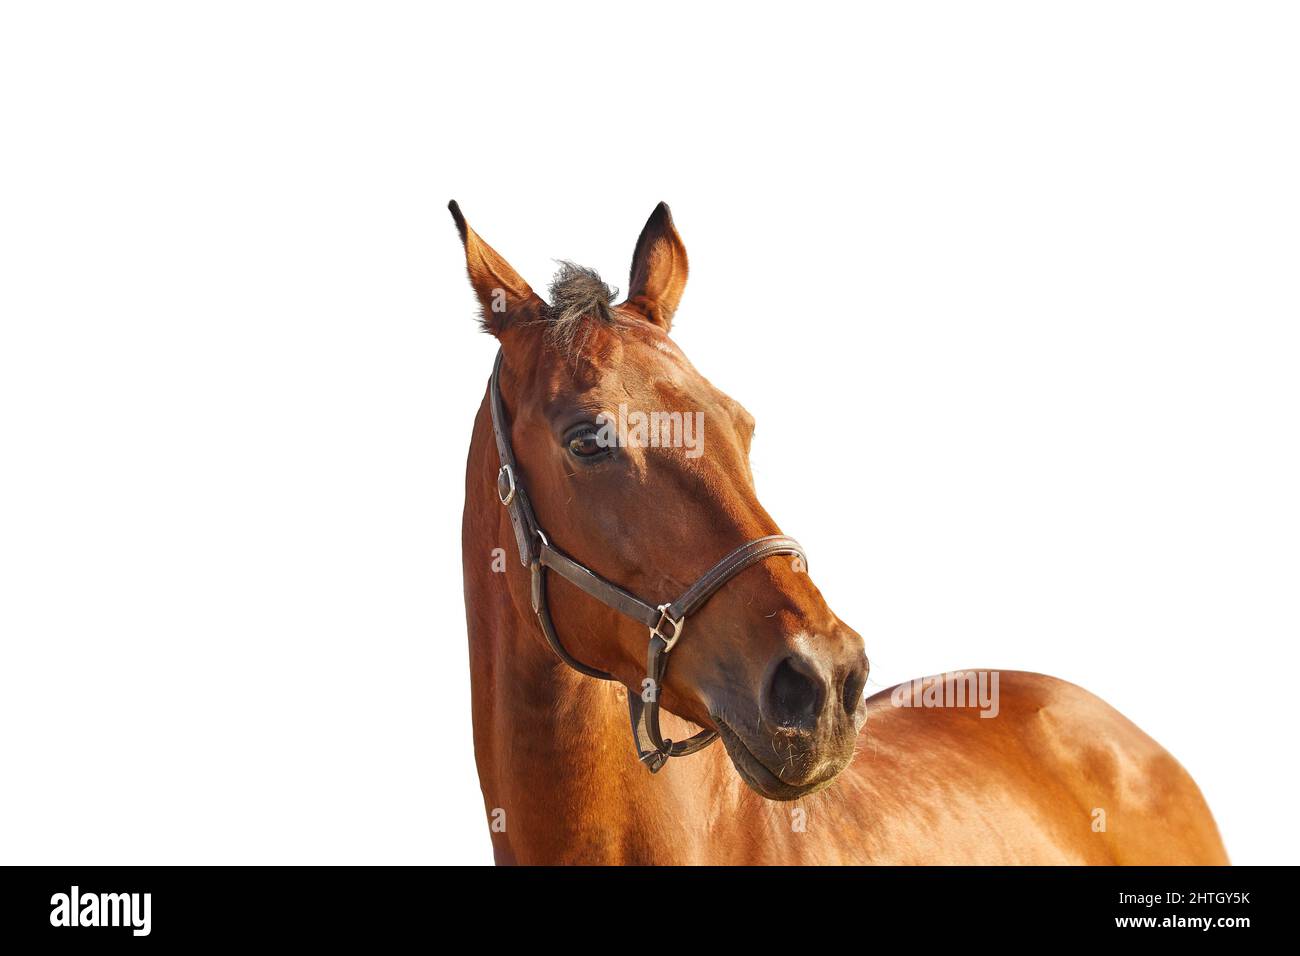 Portrait d'un cheval de baie dans un dos-nu brun en cuir sur fond blanc Banque D'Images